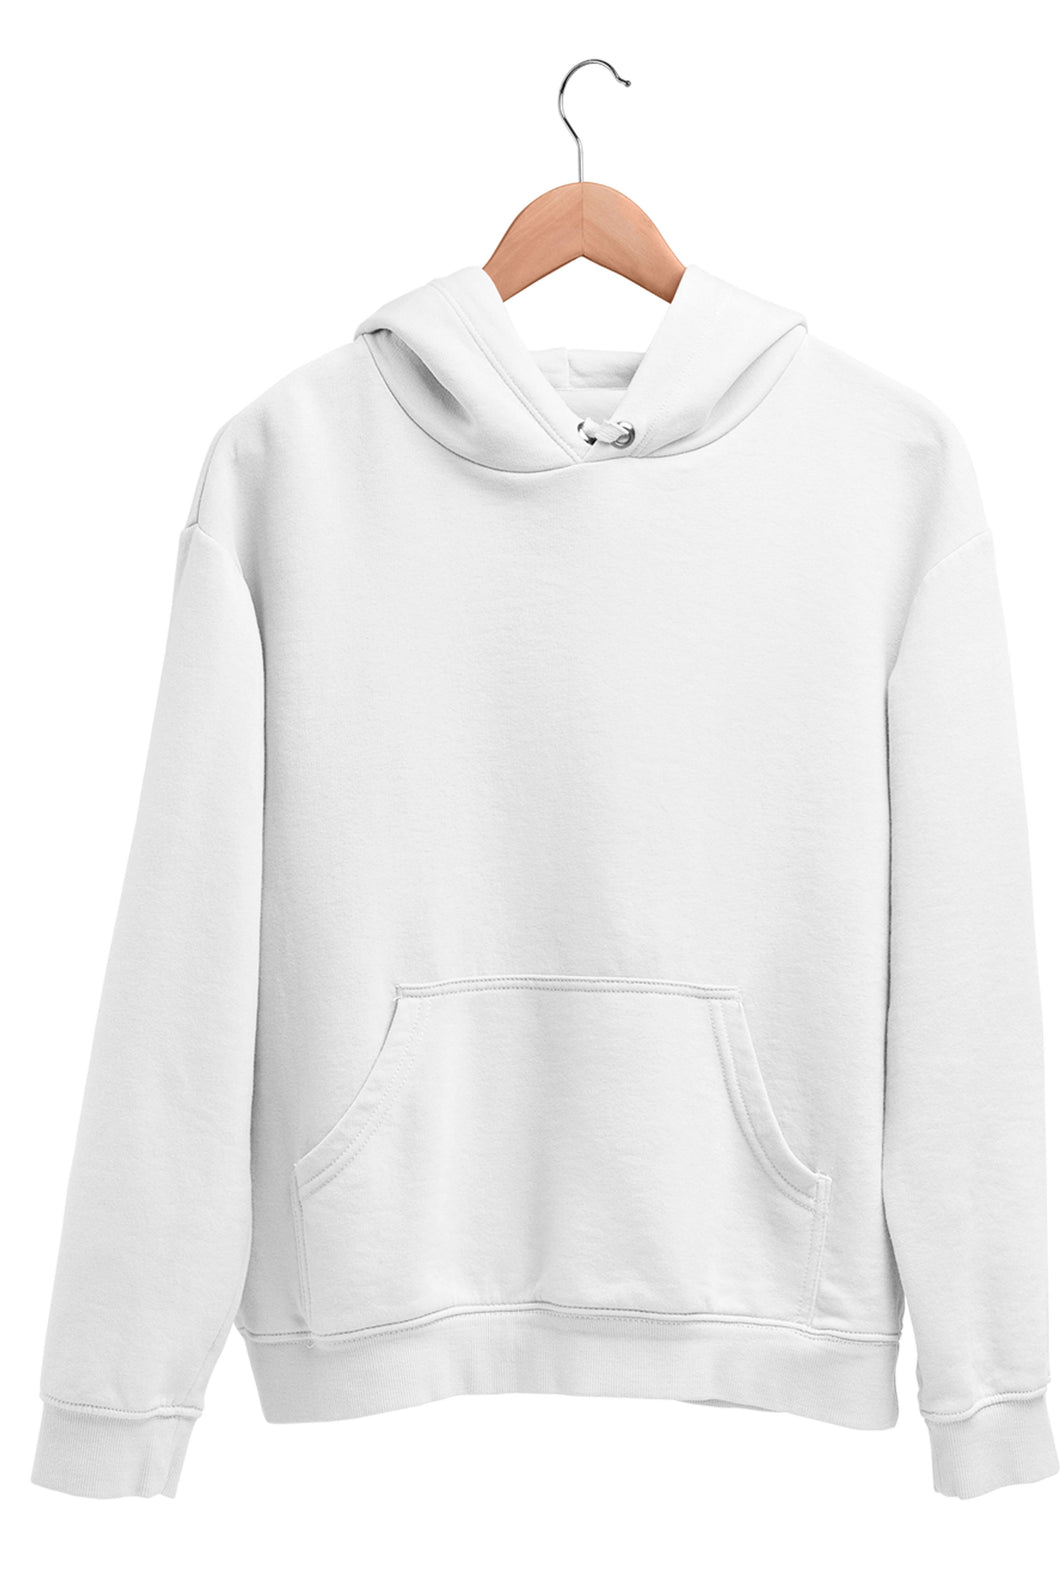 plain white sweatshirt